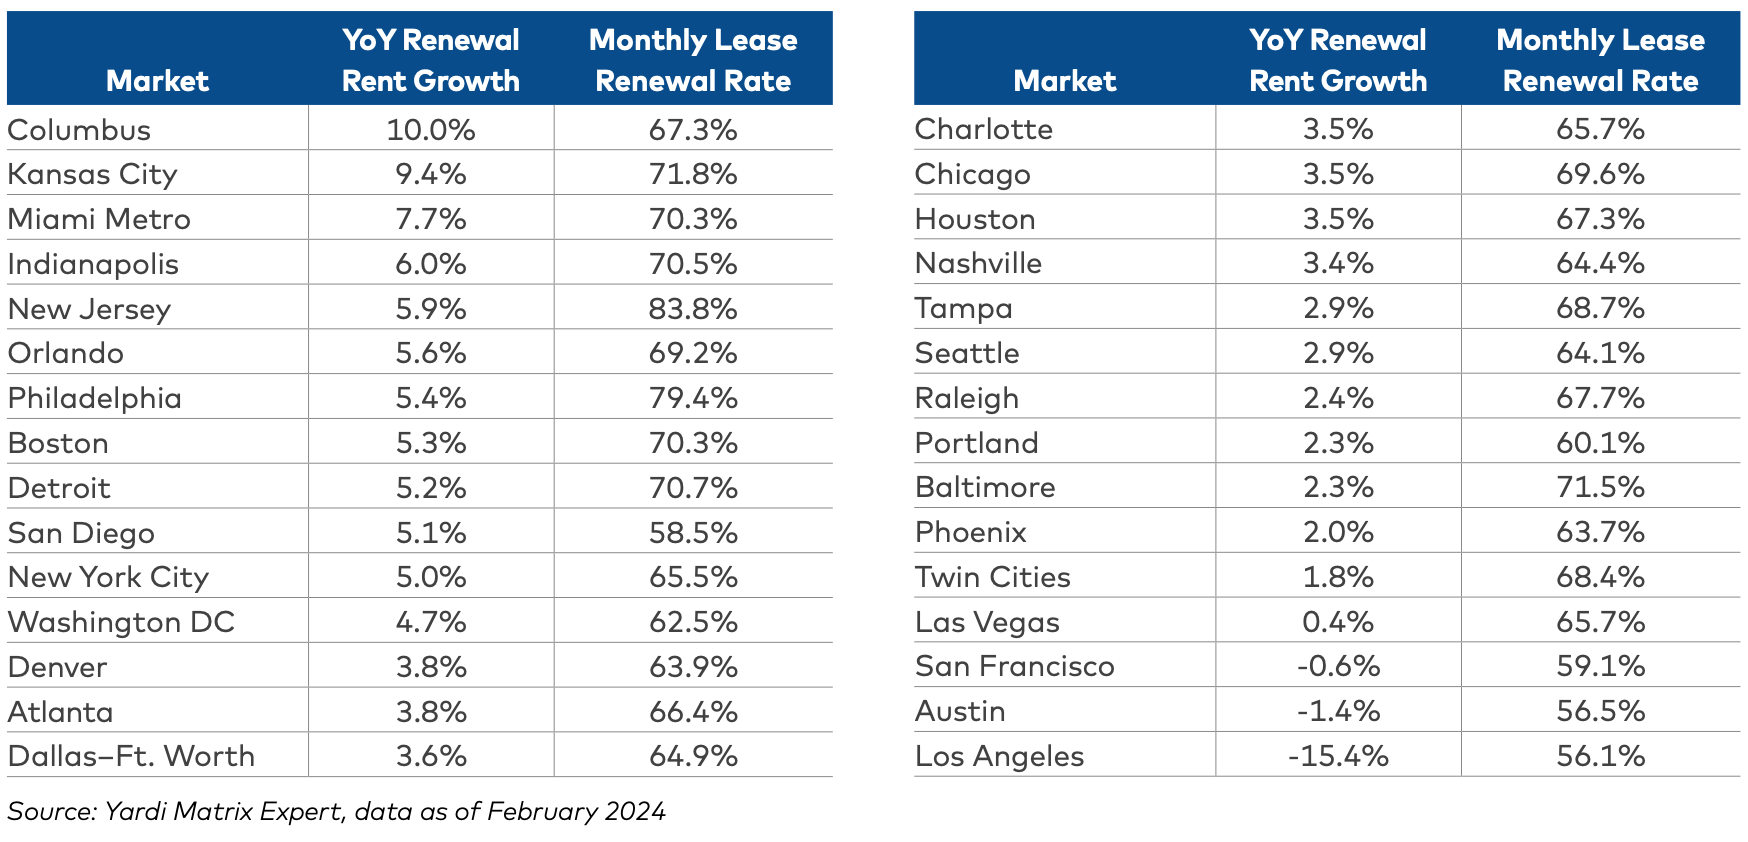 National multifamily lease renewal rates by metropolitan area in Yardi Matrix report